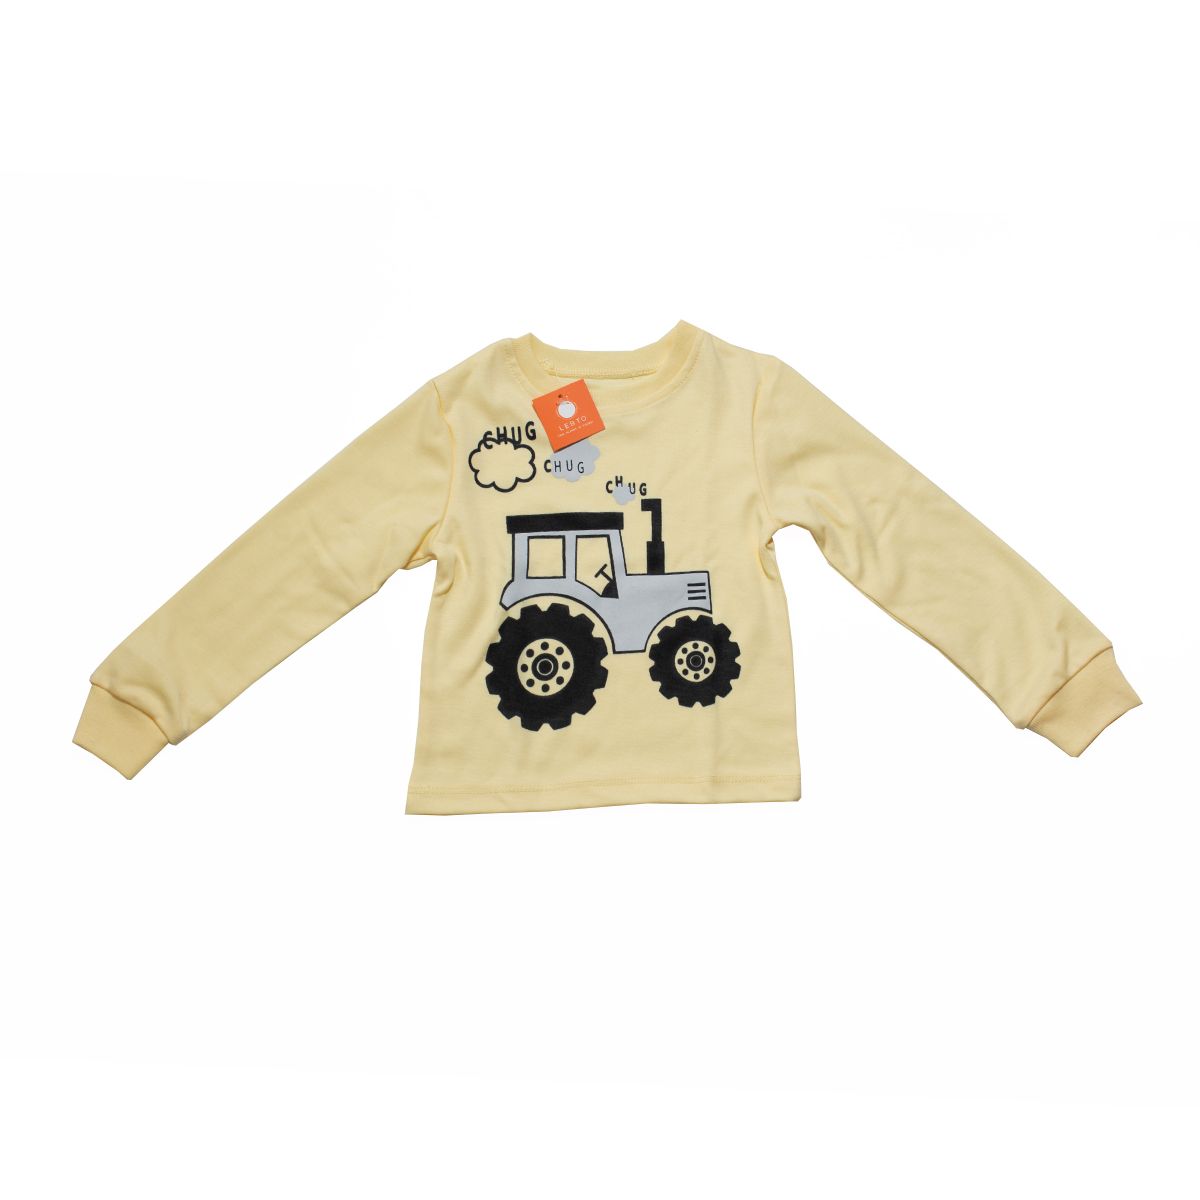 ست تی شرت آستین بلند و شلوار بچگانه لبتو مدل tractor کد 5235 -  - 3